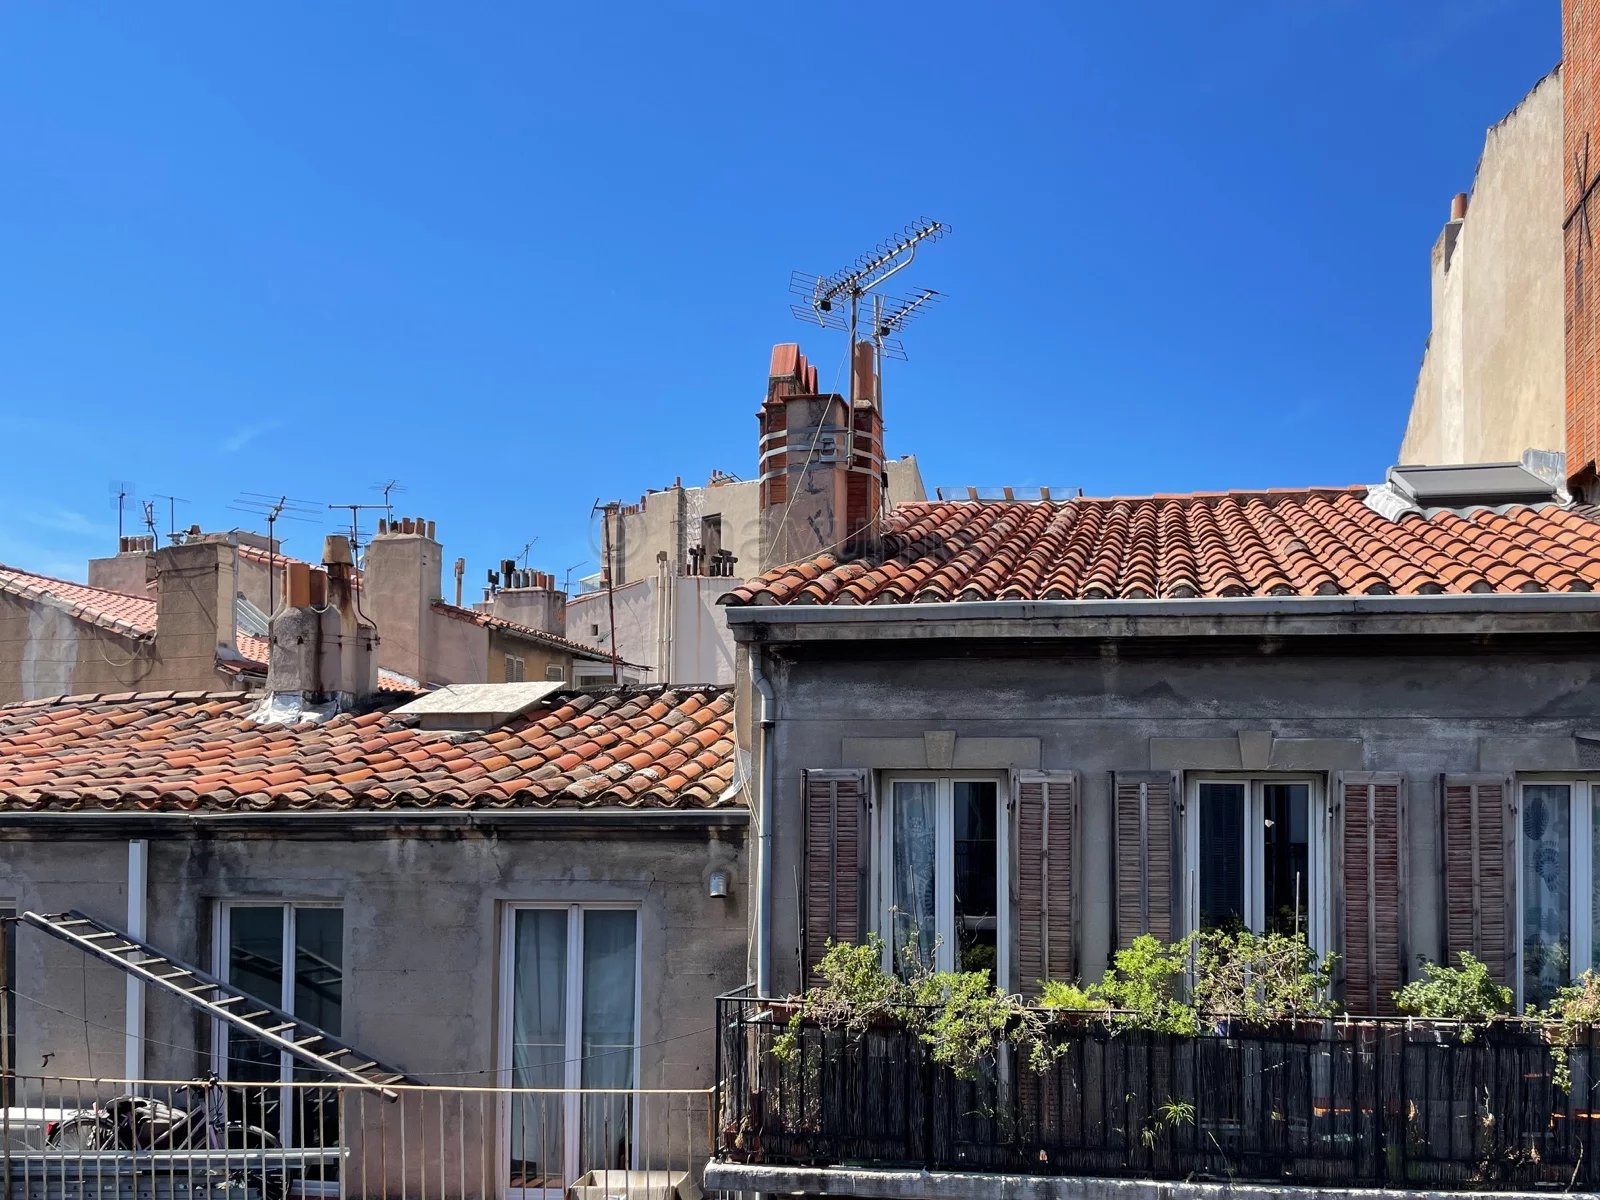 Sale Apartment - Marseille 6ème Notre-Dame du Mont